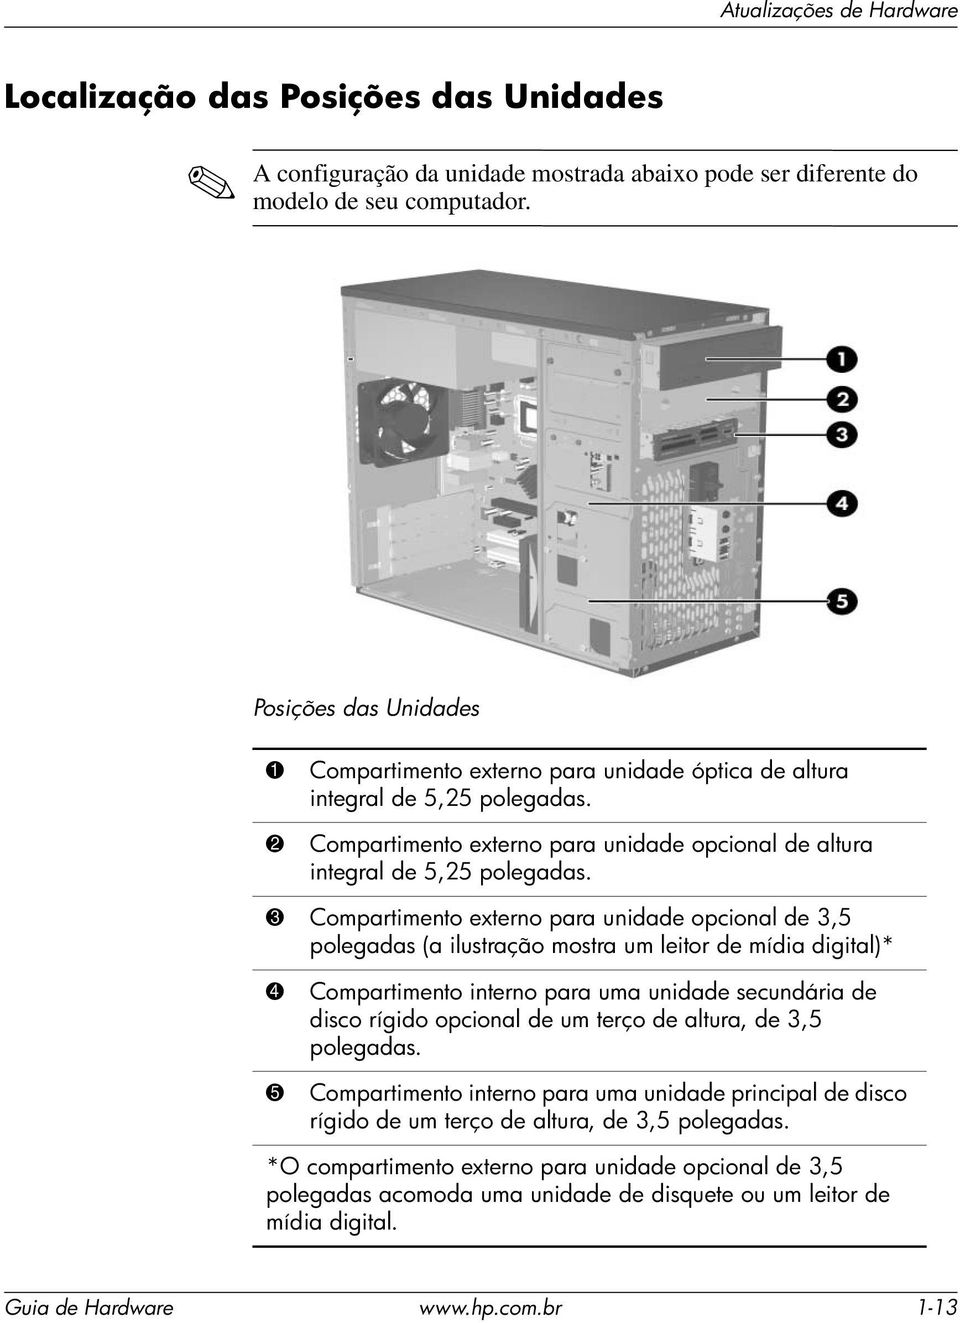 3 Compartimento externo para unidade opcional de 3,5 polegadas (a ilustração mostra um leitor de mídia digital)* 4 Compartimento interno para uma unidade secundária de disco rígido opcional de um